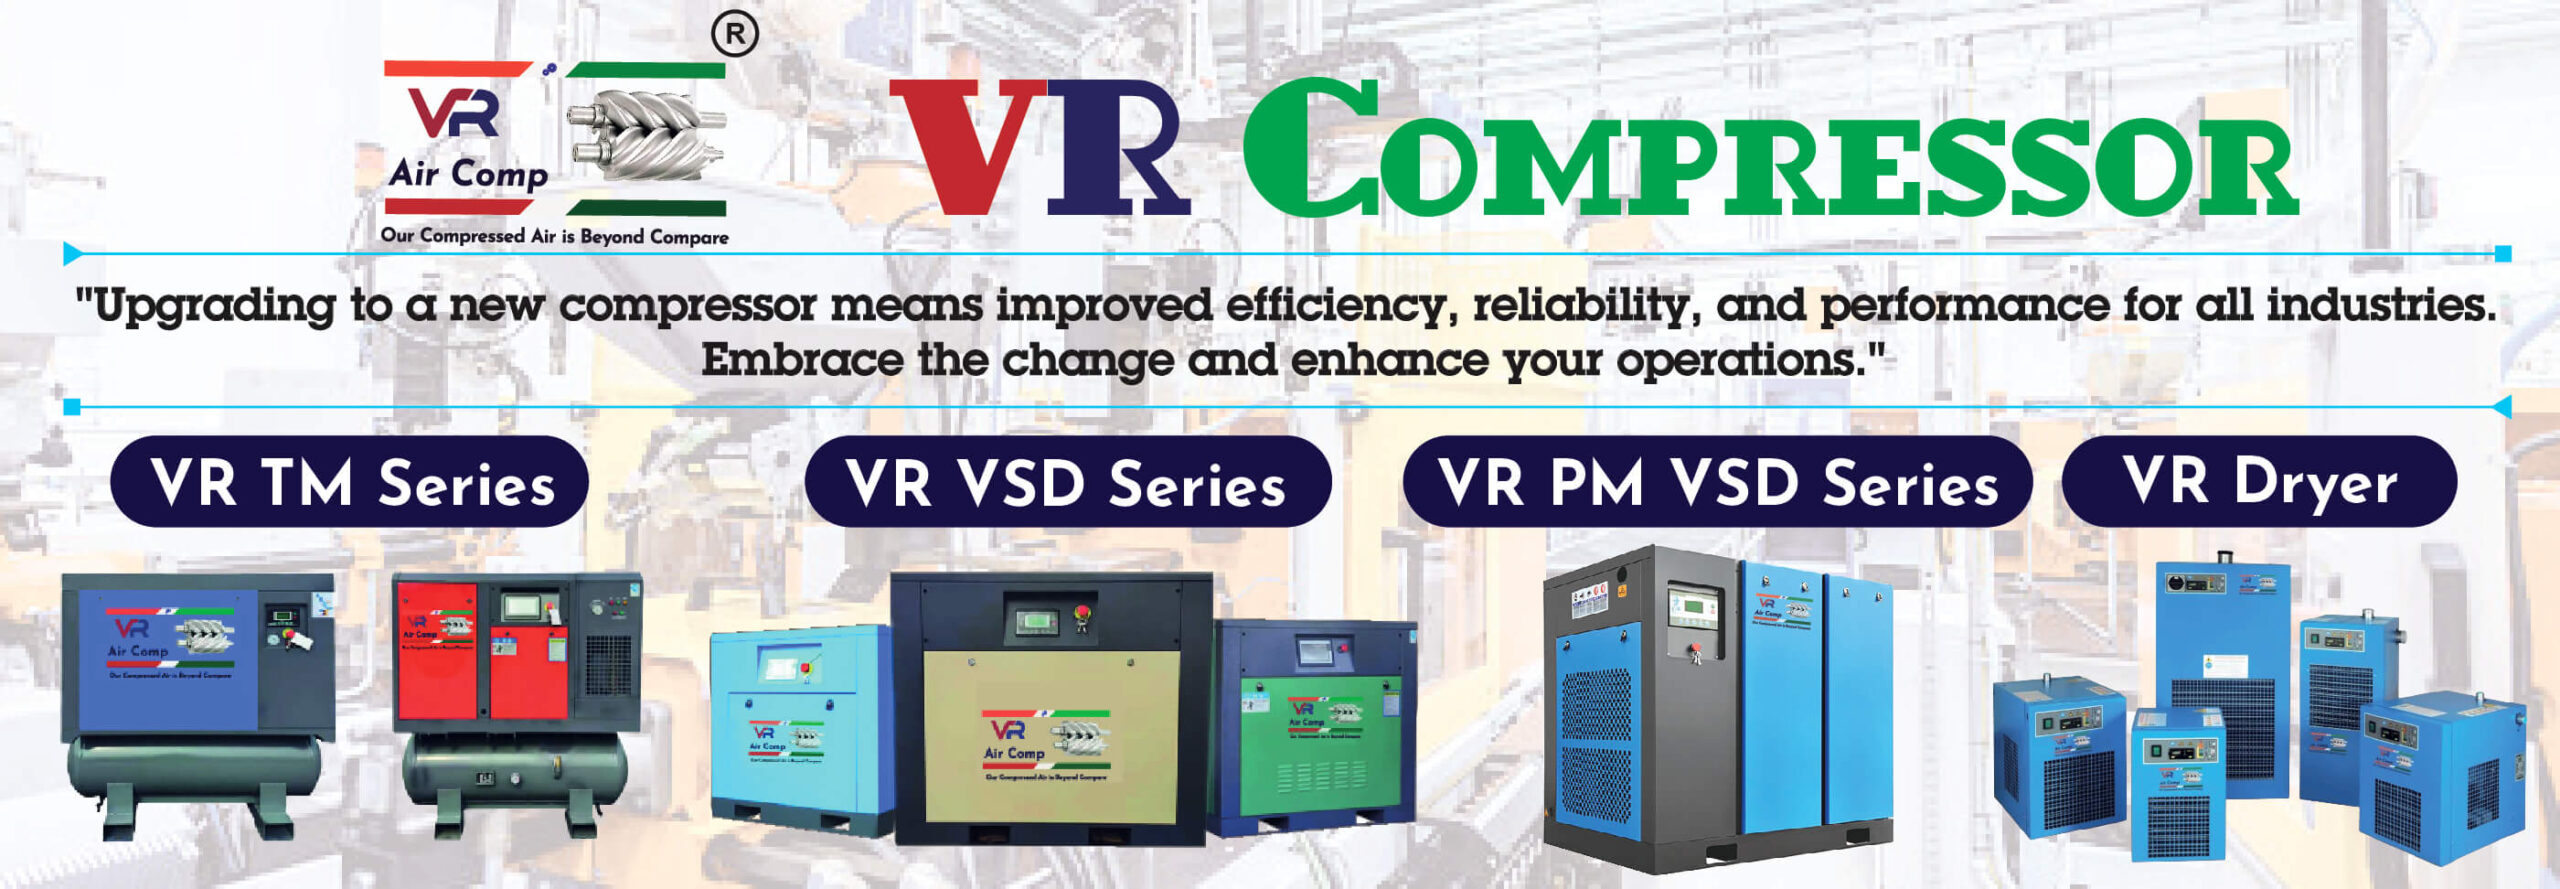 VR Compressor TM Series, VR VSD Series, VR PM VSD Series, VR Dryer